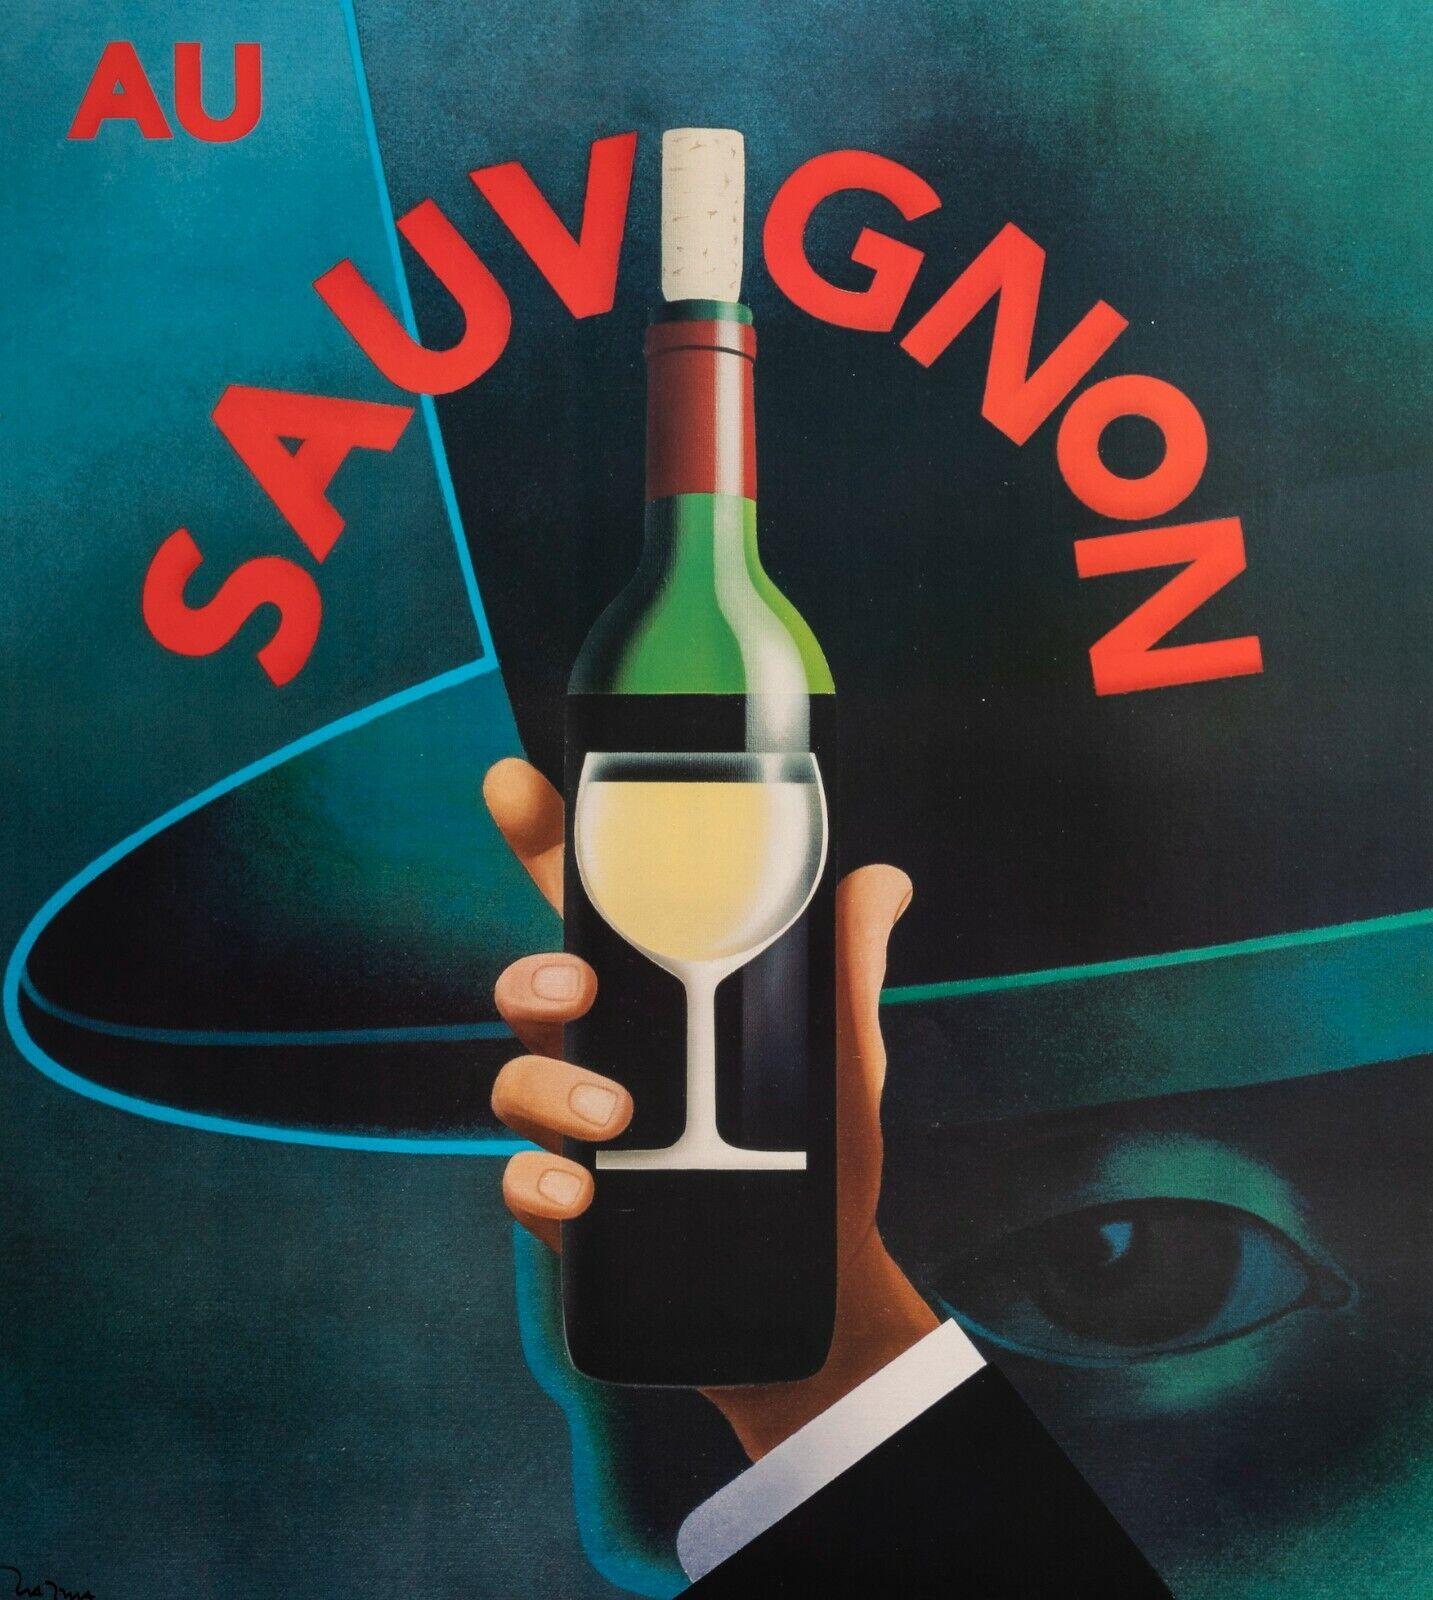 Original Poster-Razzia-Au Sauvignon-Restaurant Bistrot Vin-Paris, 1995

Advertising poster for the “Au Sauvignon” bistro, located at 80 rue des Saints-Pères in Paris.

Additional details:
Materials and Techniques: Colour lithograph on